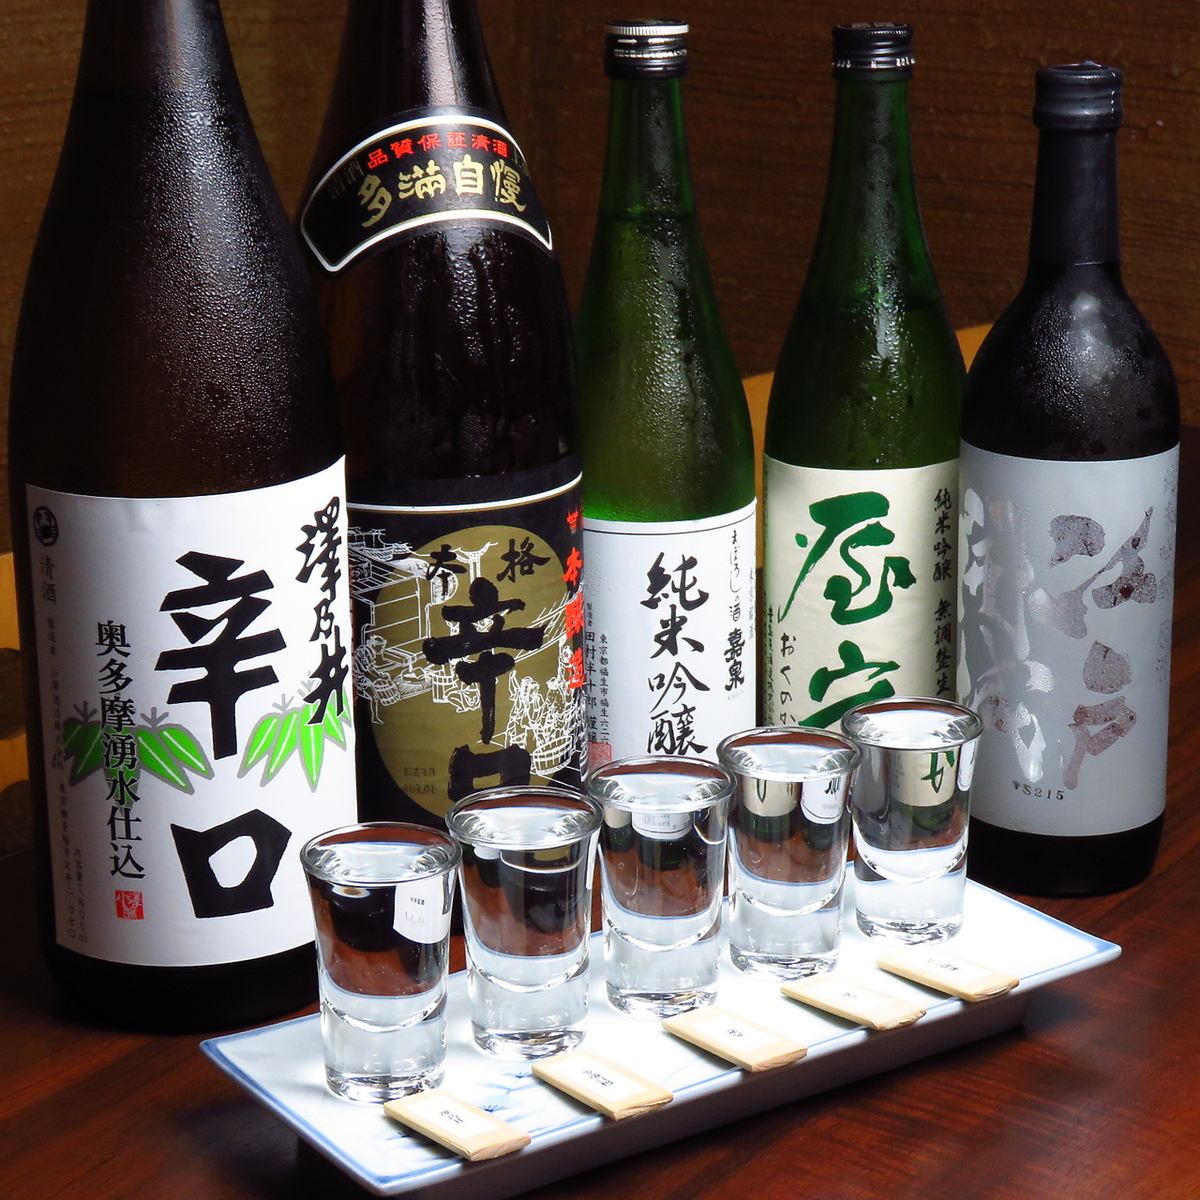 我们推荐一套您可以比较和饮用东京清酒的套餐。